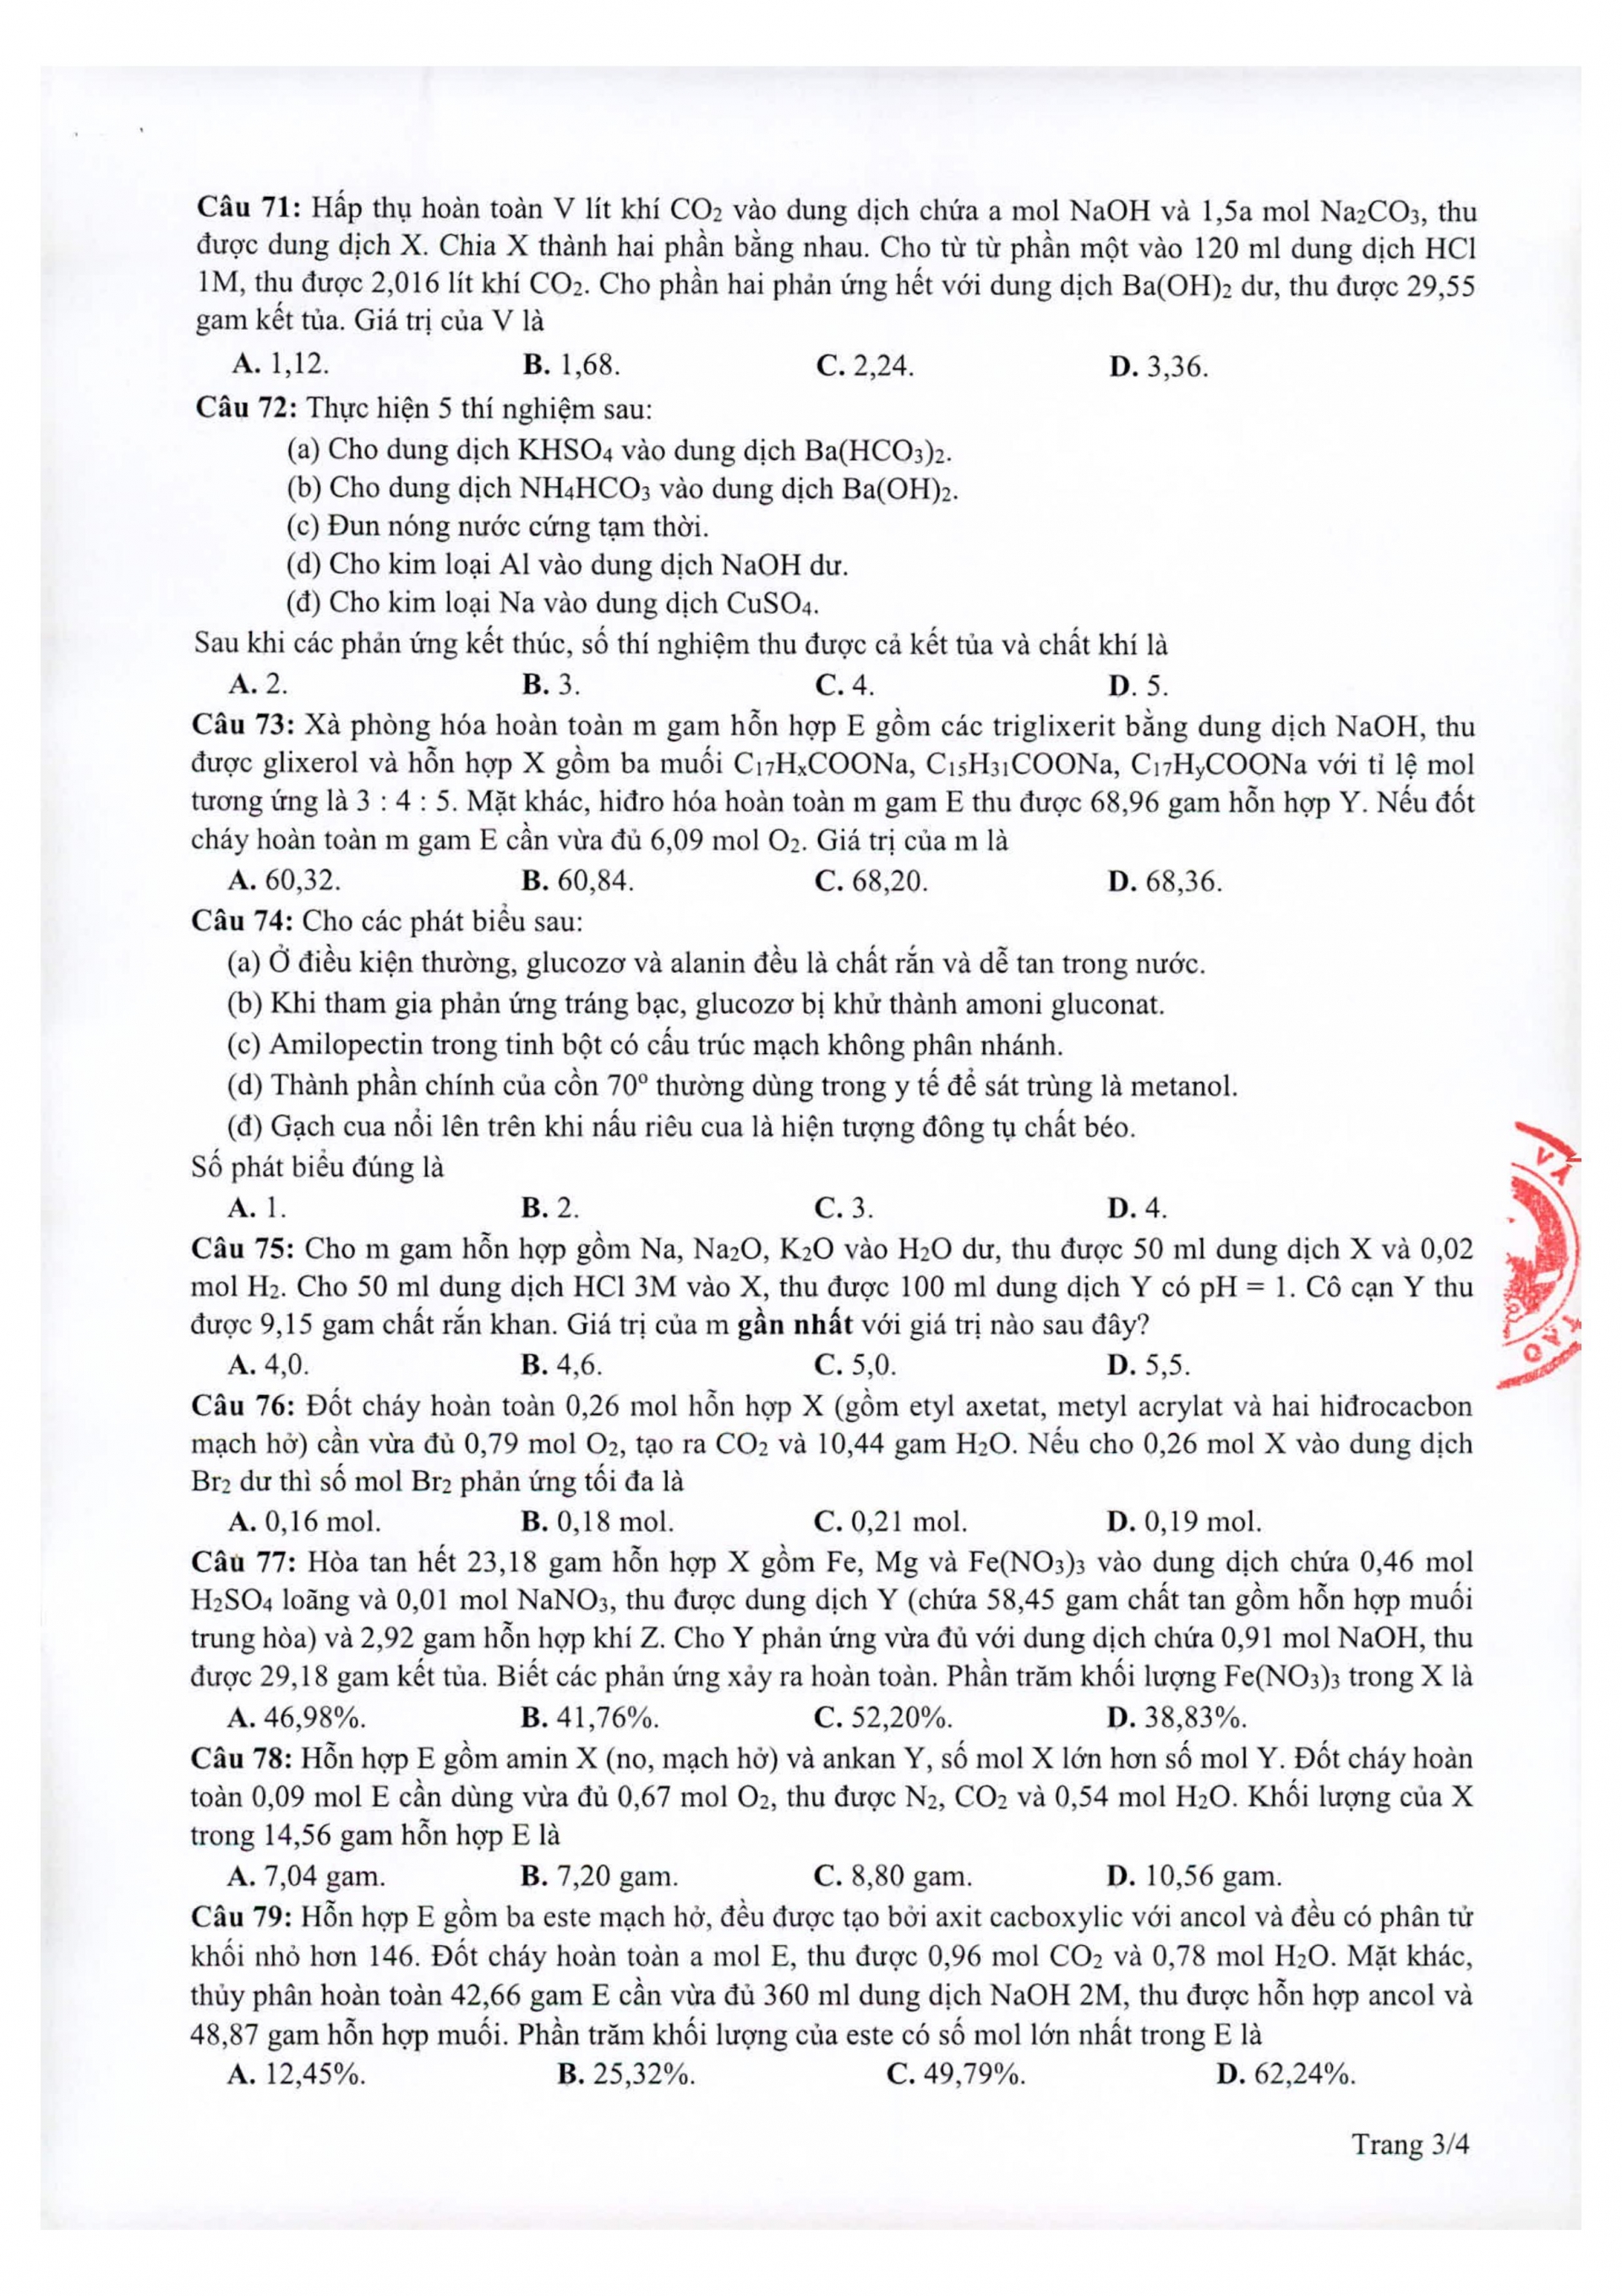 Đáp án môn Hóa học mã đề 219 kì thi THPT Quốc gia 2021  - Ảnh 3